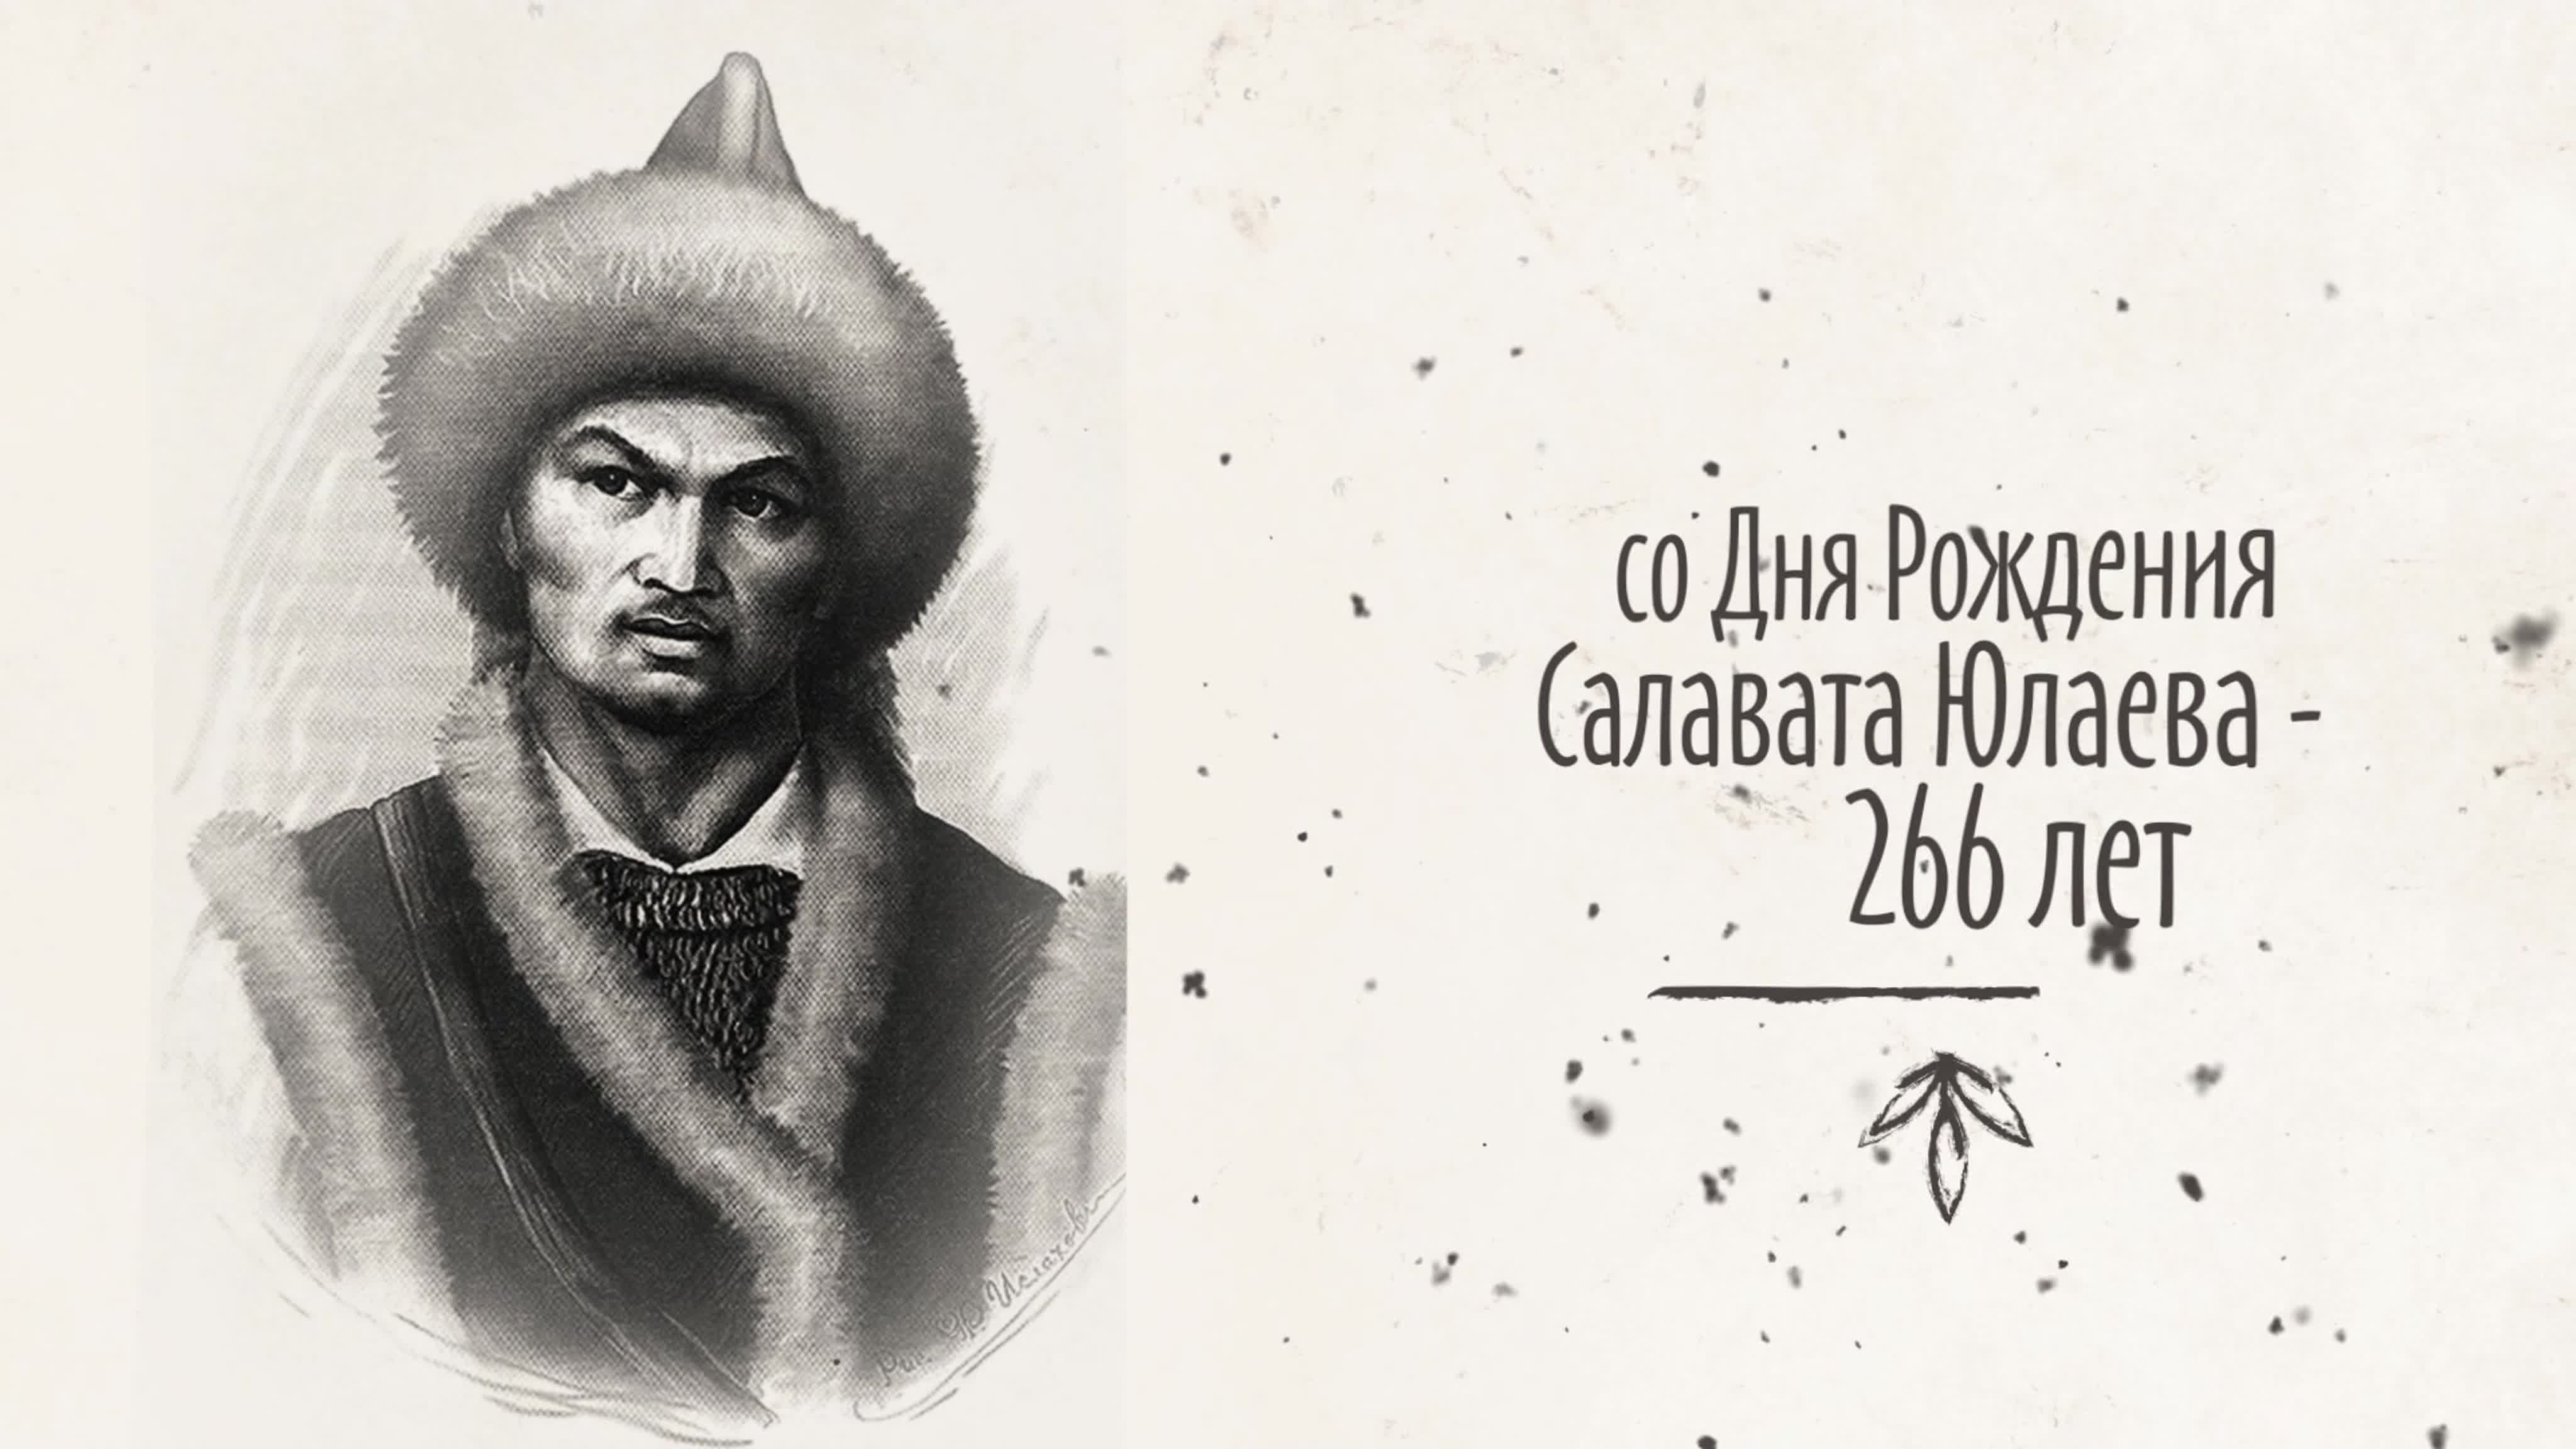 Салават Юлаев национальный герой башкирского народа